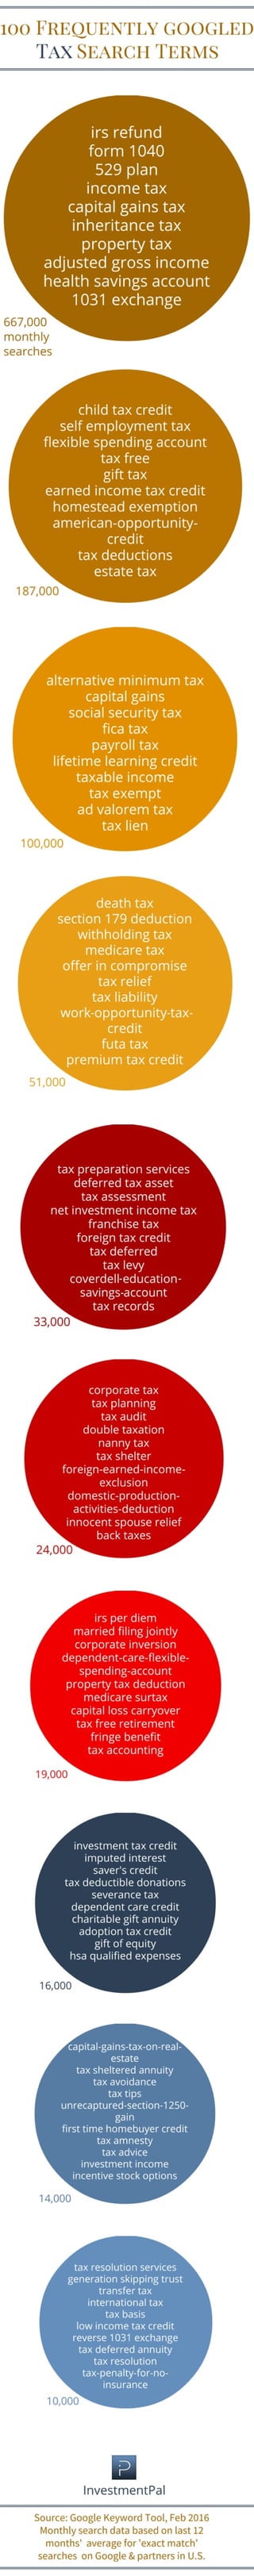 Tax topics